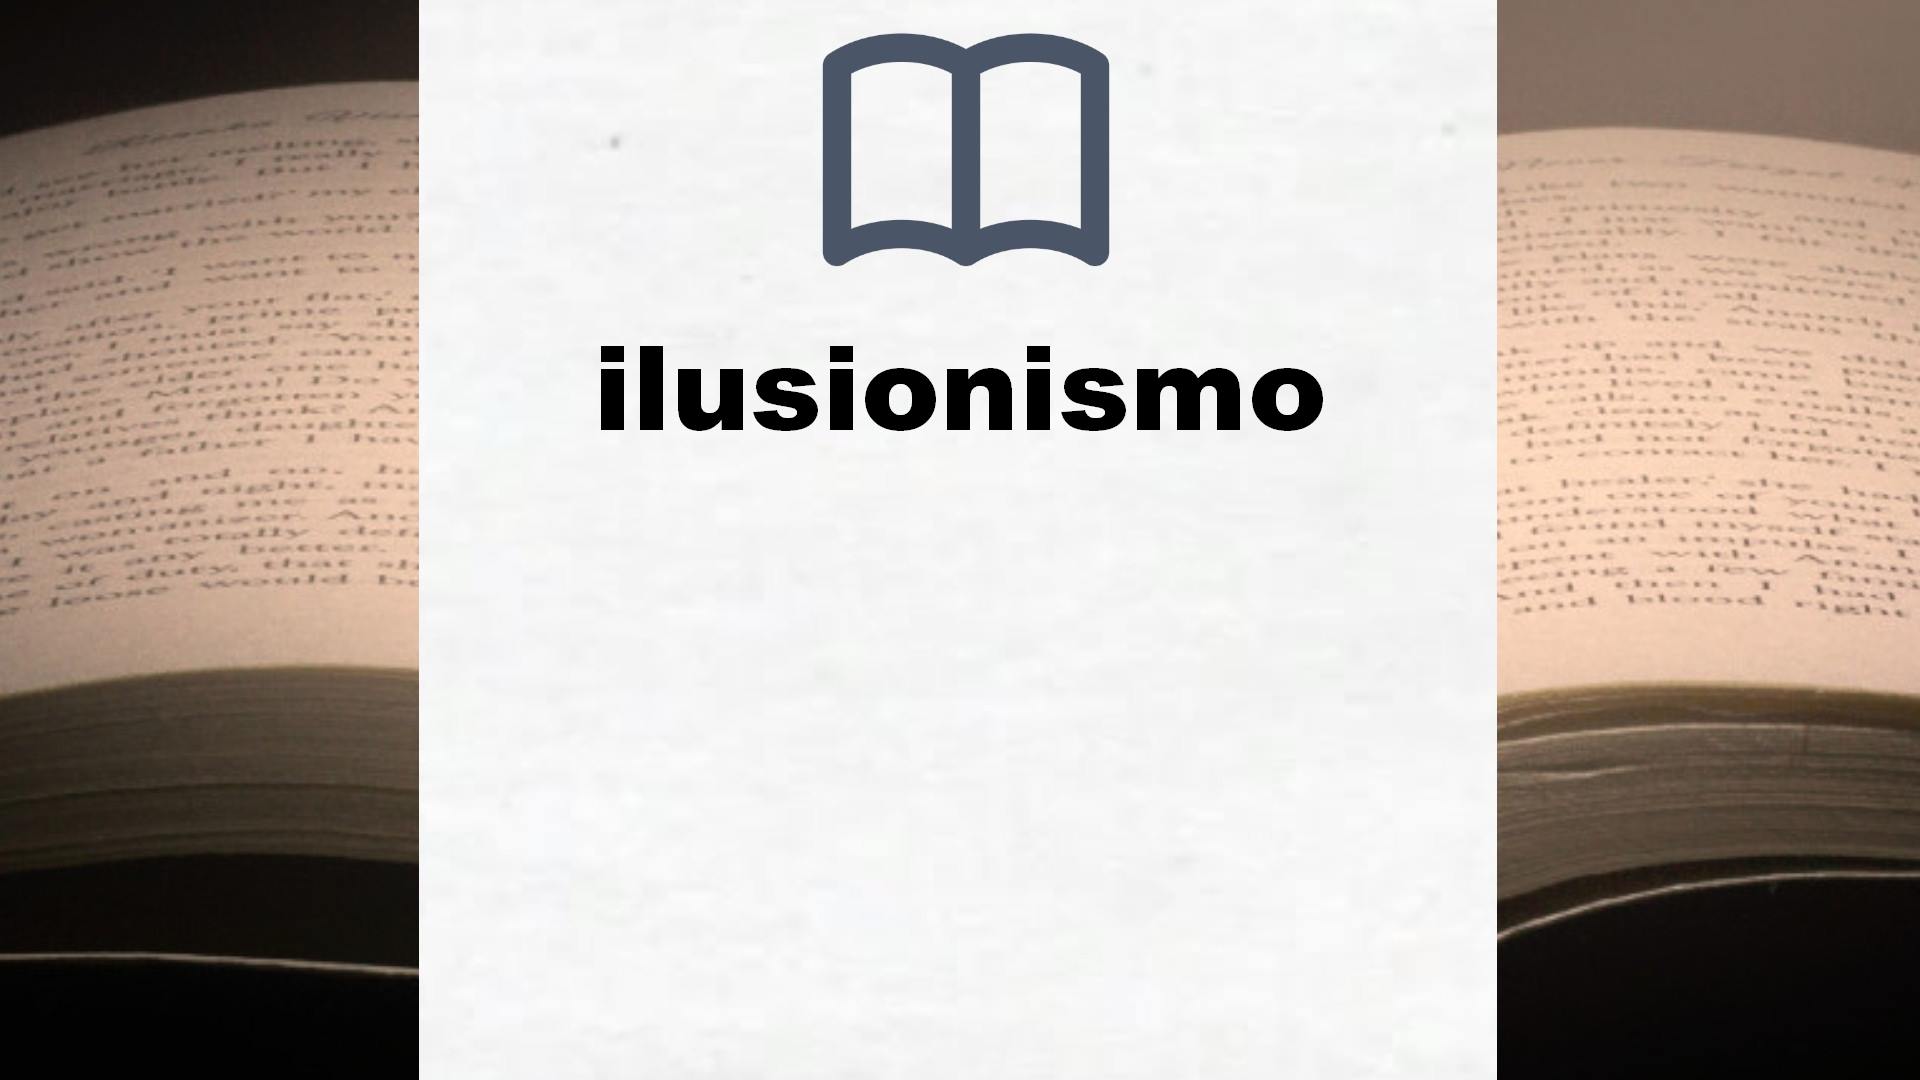 Libros sobre ilusionismo